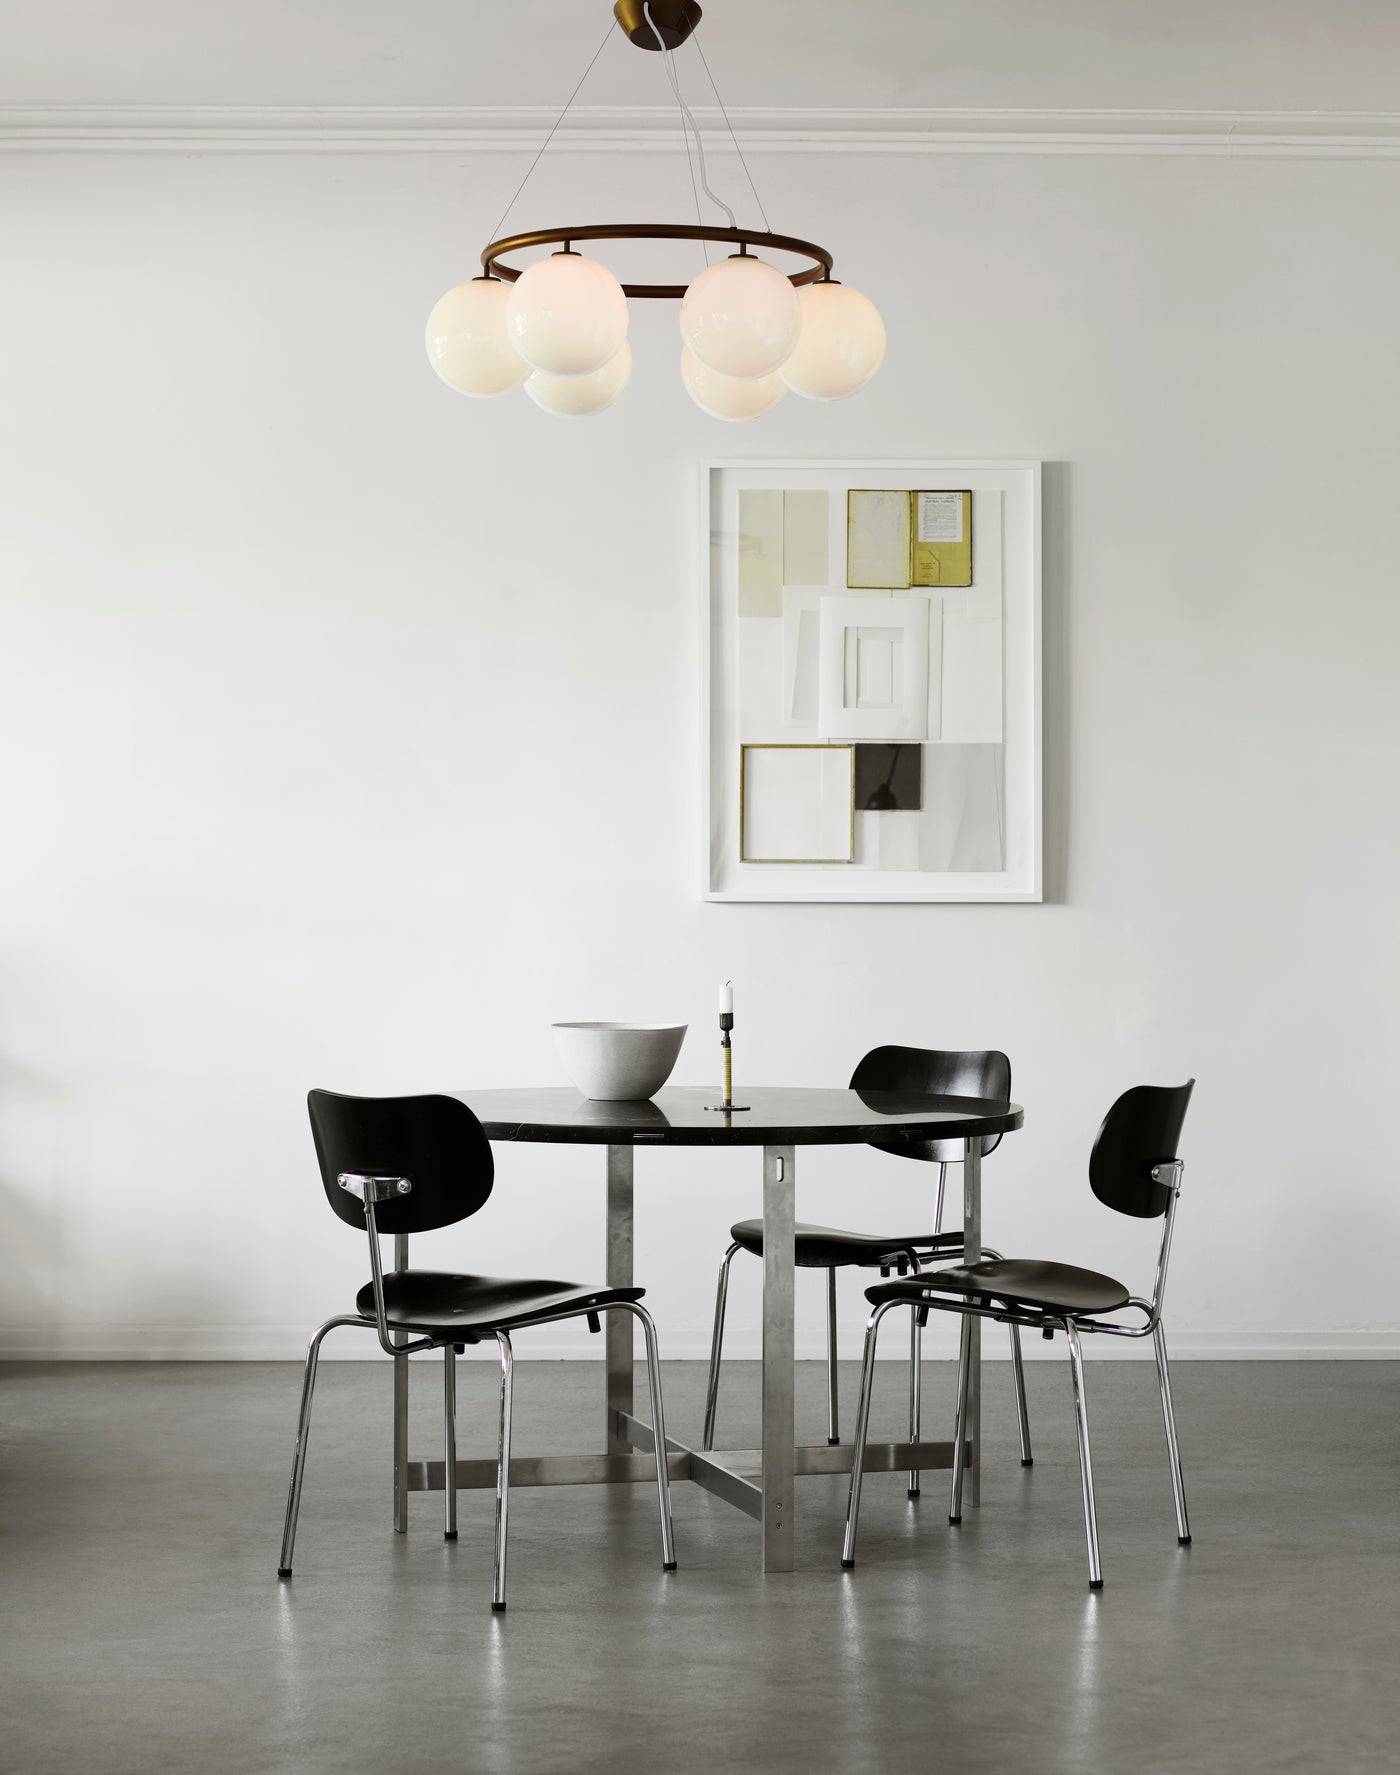 Lysekrone bestående af seks runde skærme i opalglas samt bruneret krone, i spisestuemiljø over spisebord